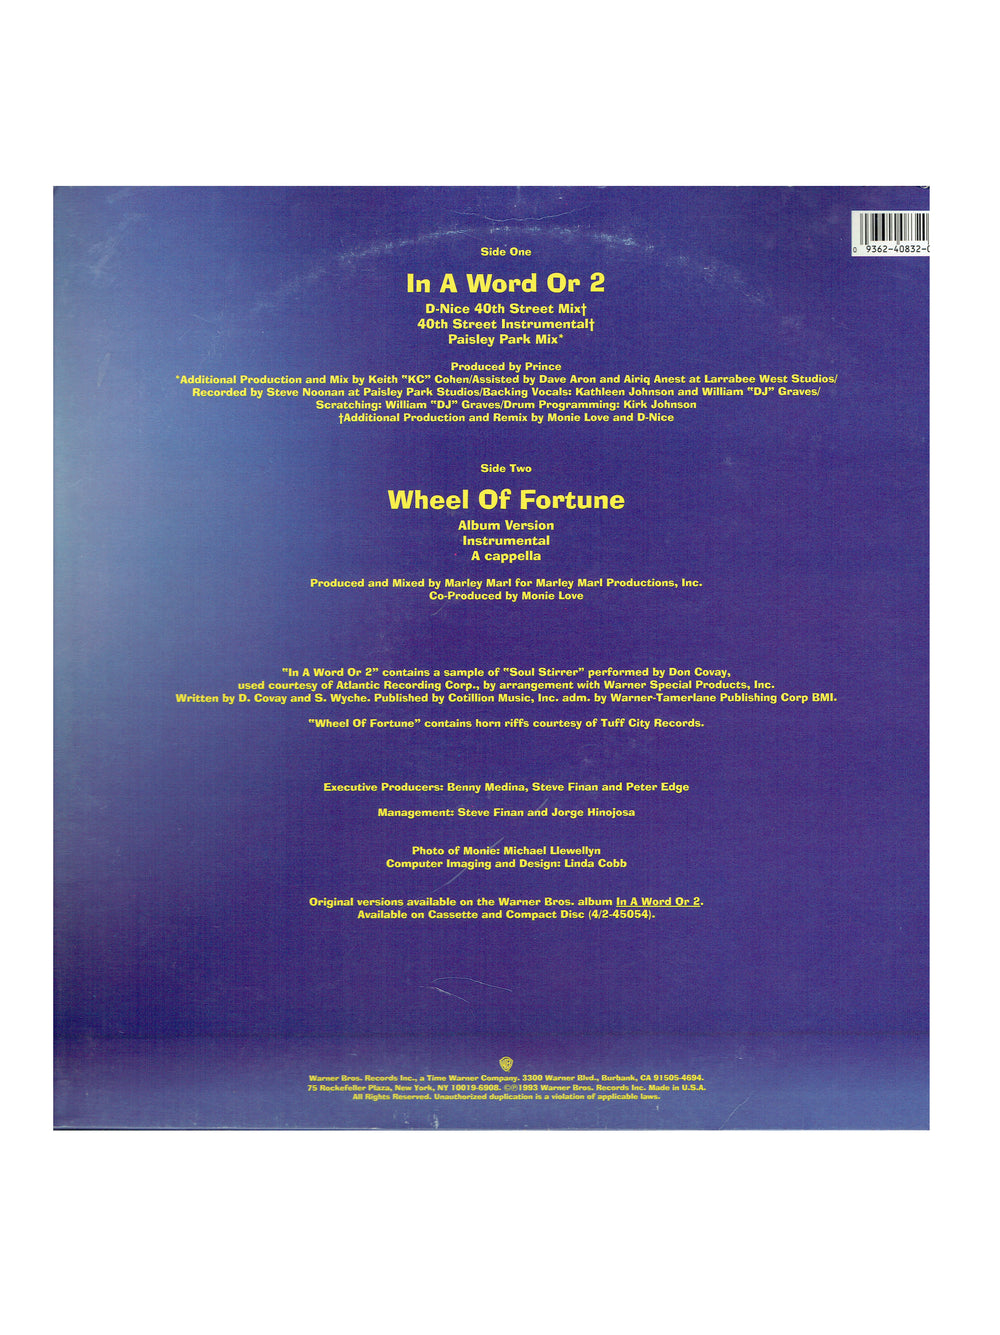 Prince – Monie Love – In A Word Or 2 / Wheel Of Fortune Vinyl 12" US Preloved: 1993